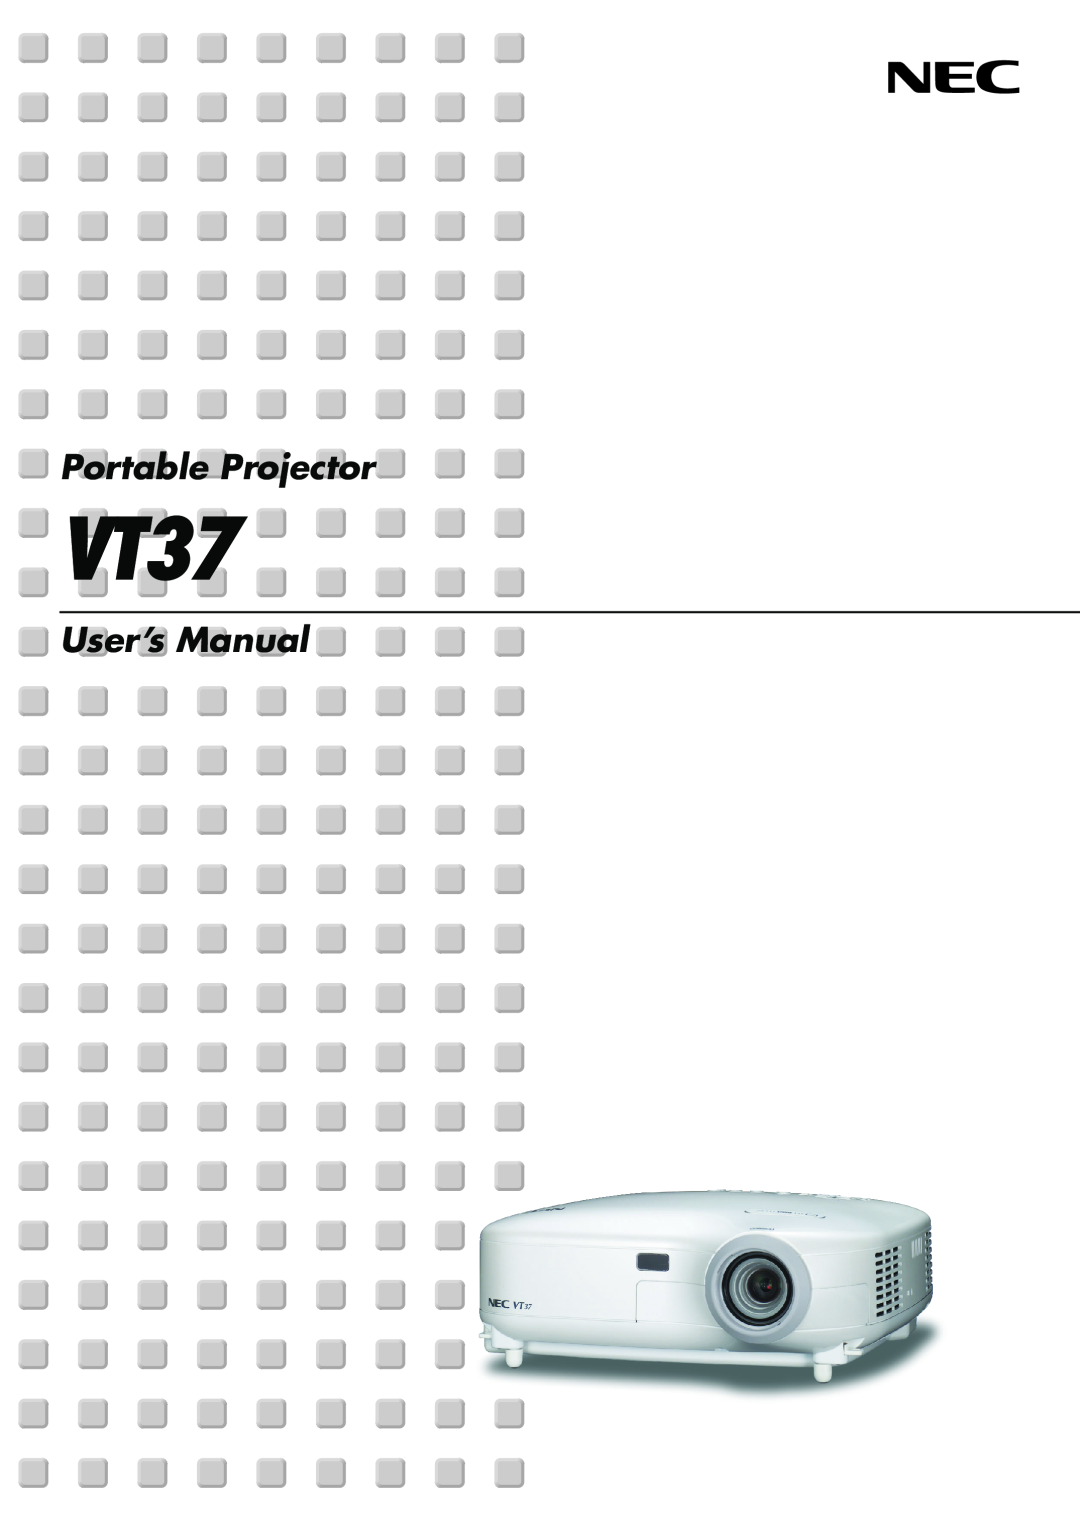 NEC VT37 manual Portable Projector, User’s Manual 